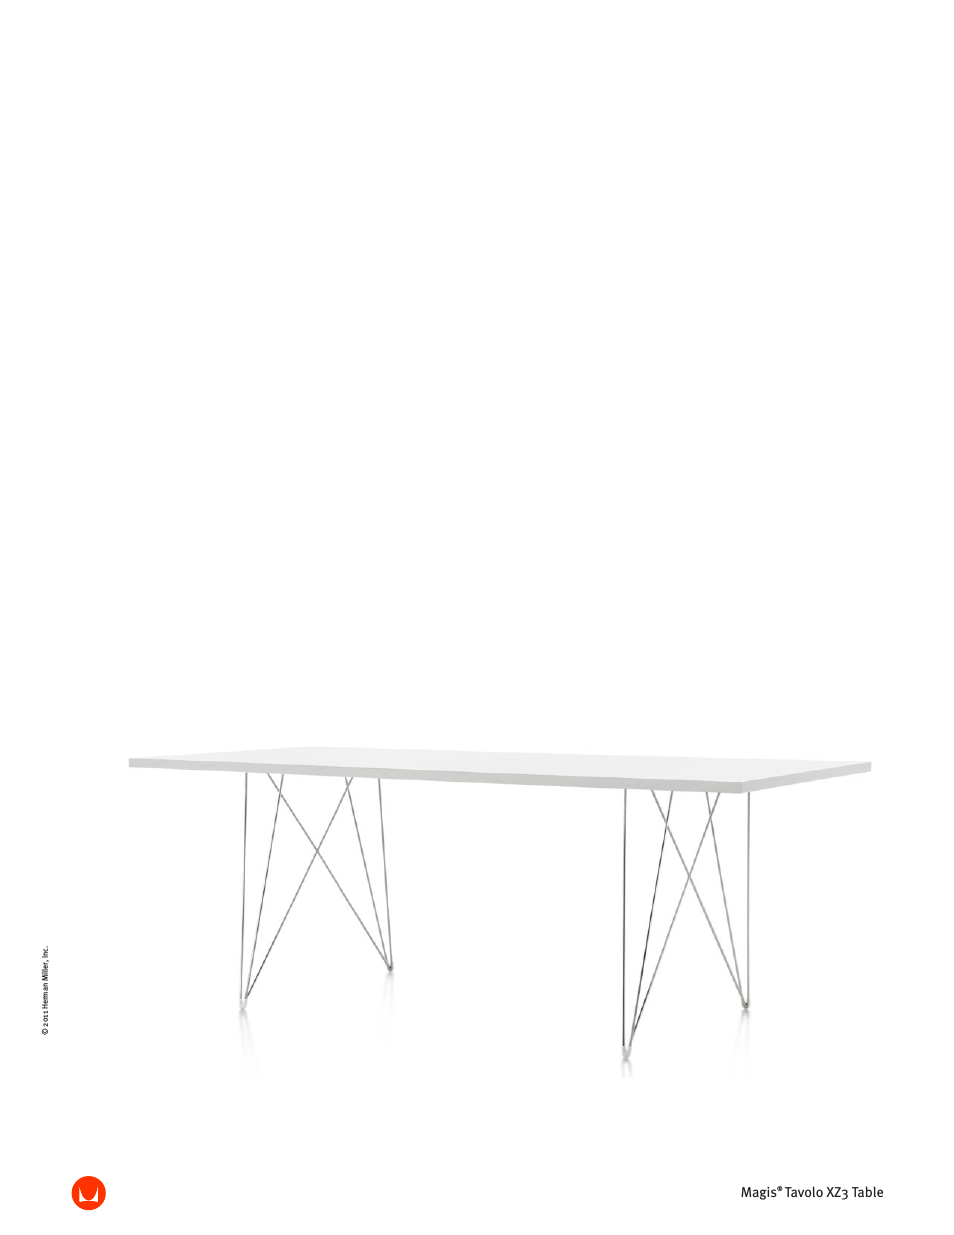 Tavolo XZ3 Table - Product sheet